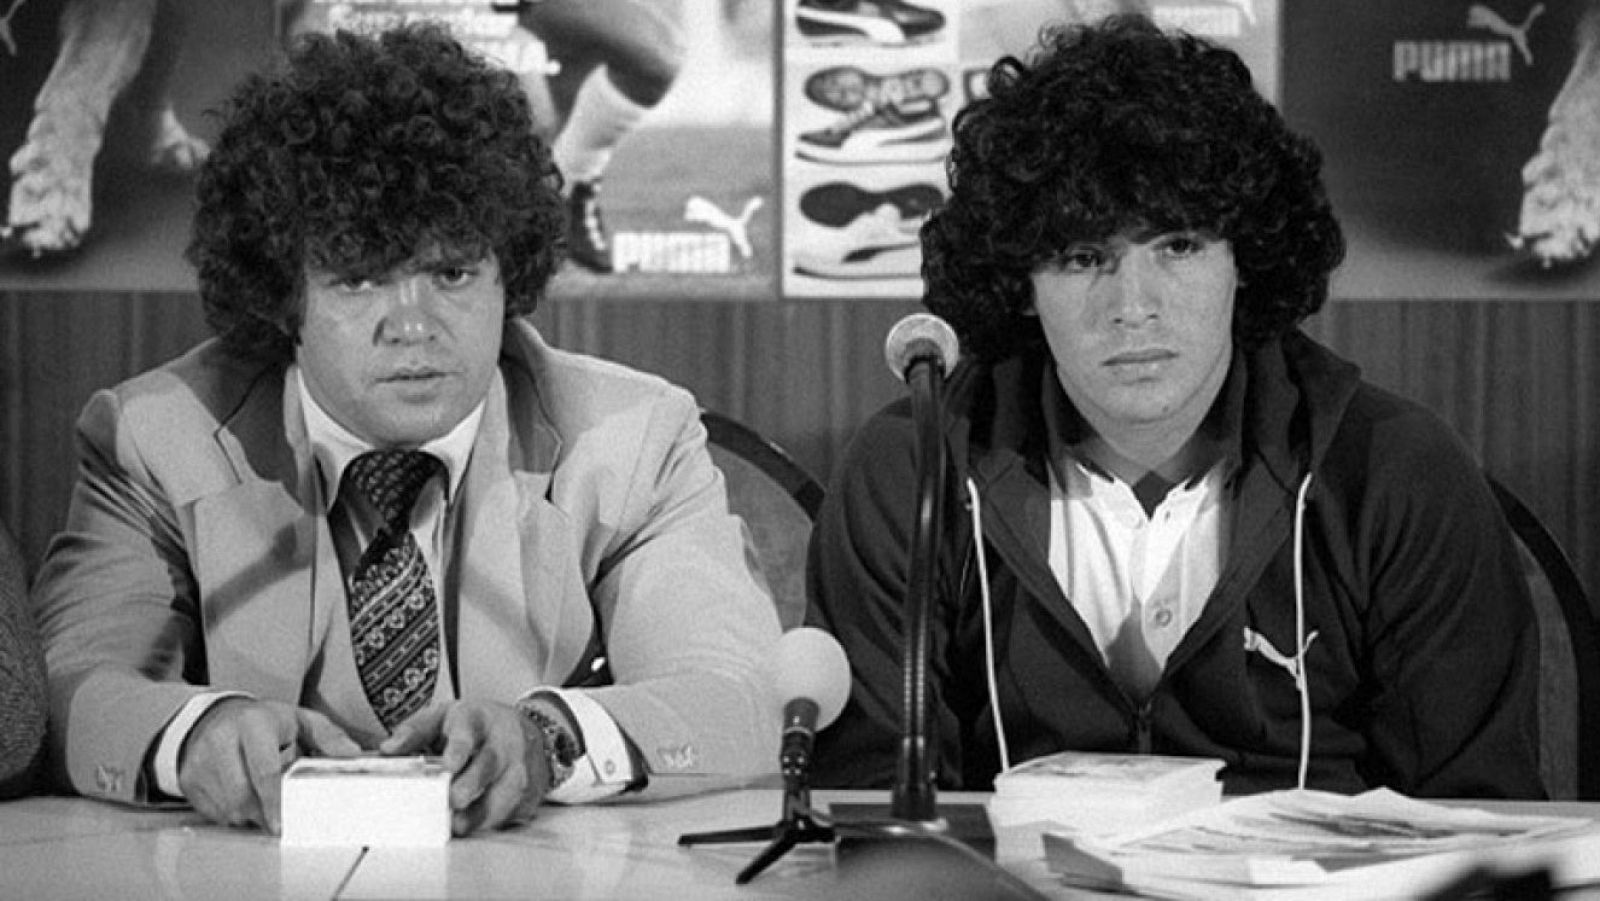 Cyterszpiler y Maradona, en una imagen de archivo.